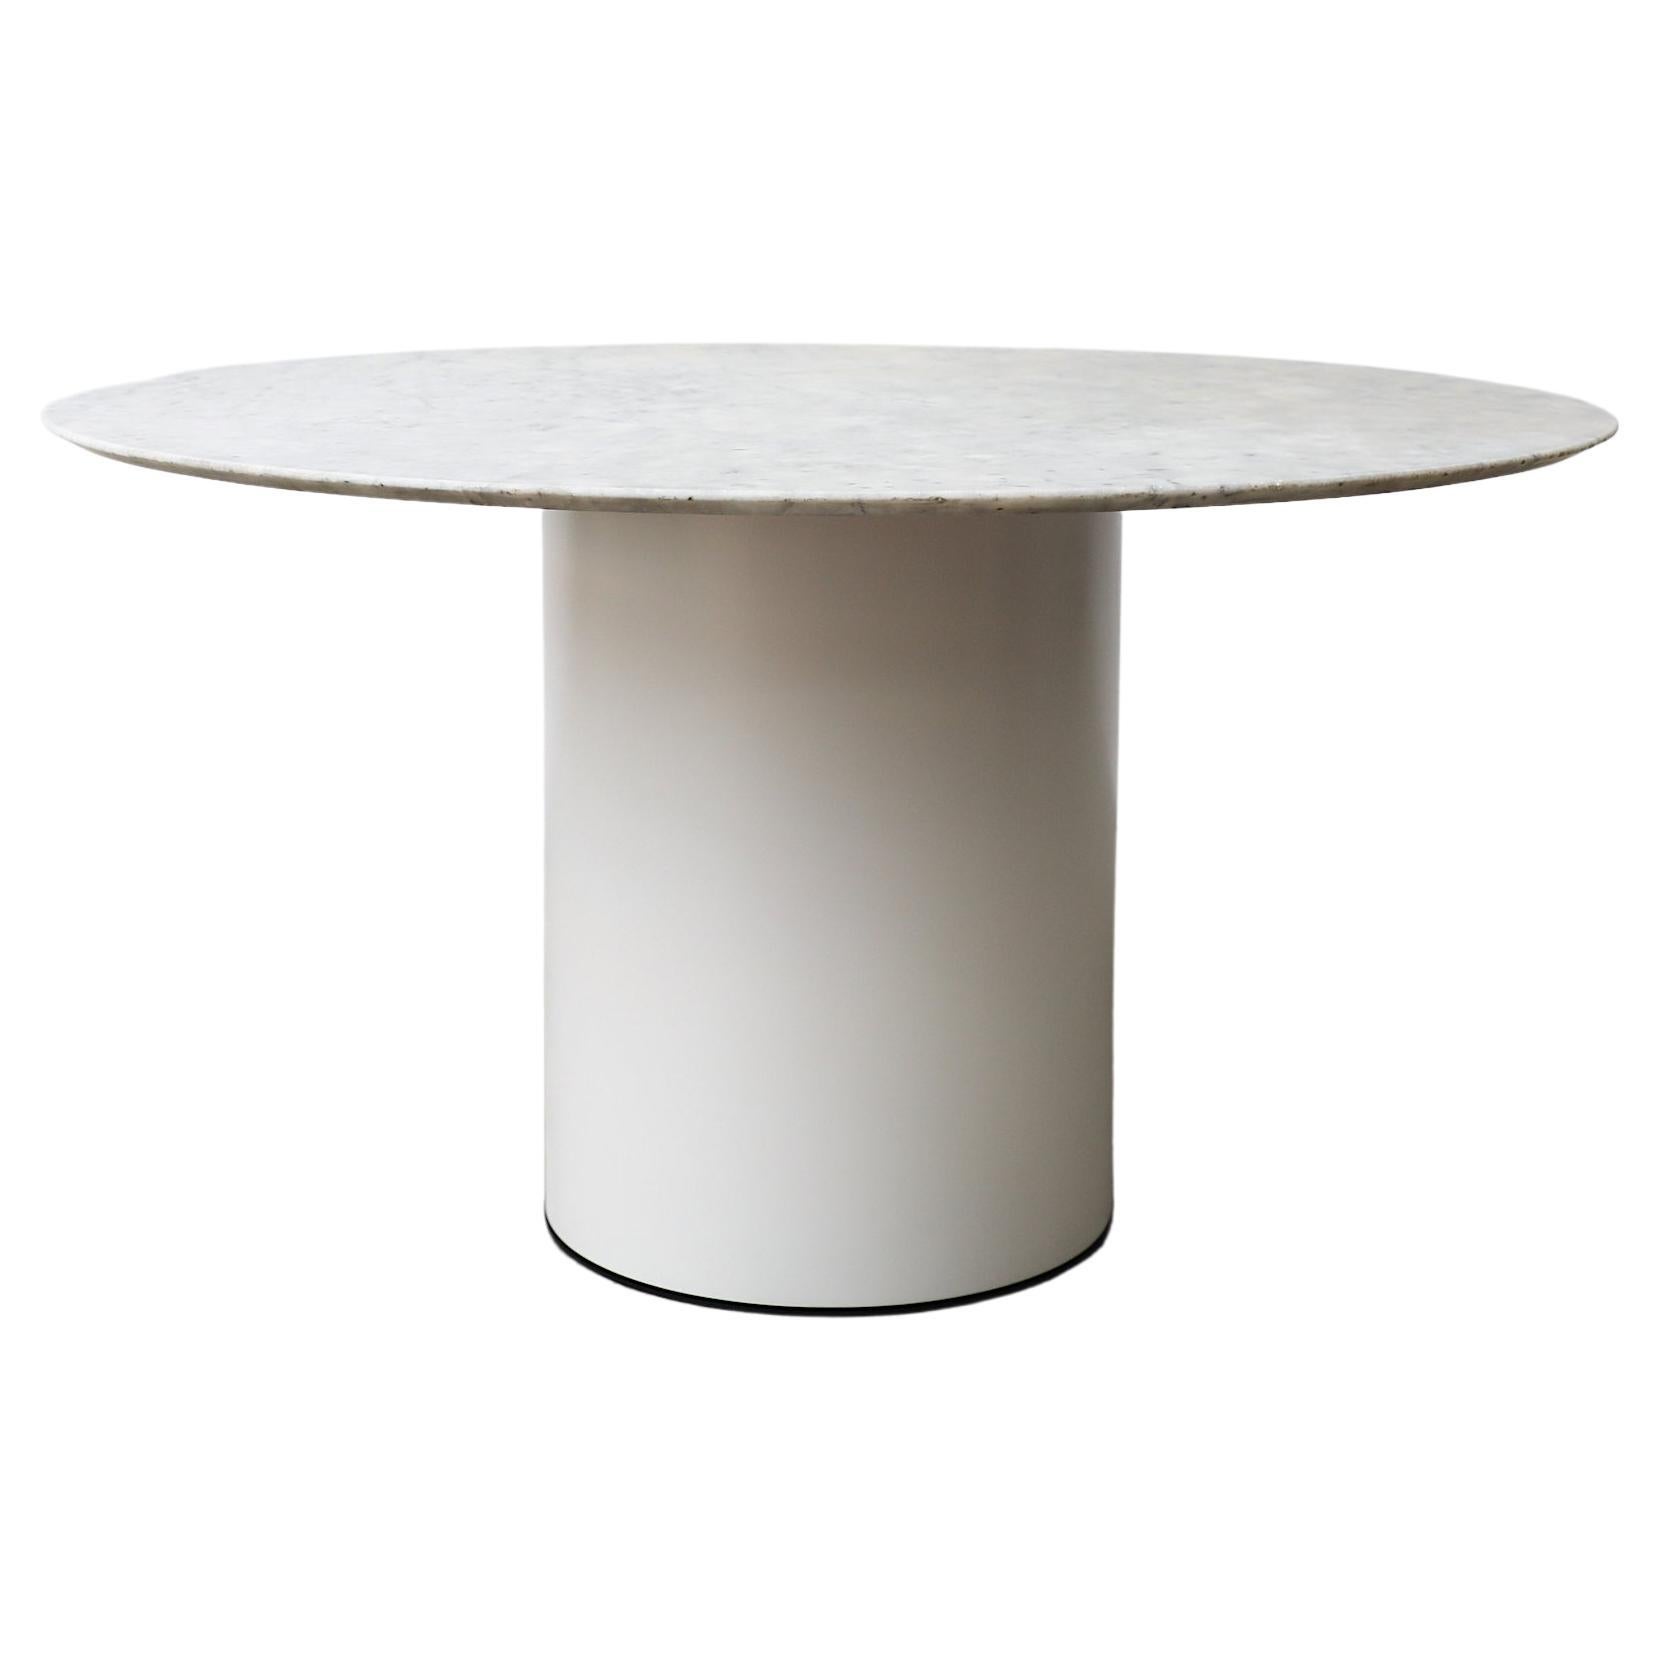 Metaform Round Carrara Marble Table with White Enameled Metal Pedestal Base